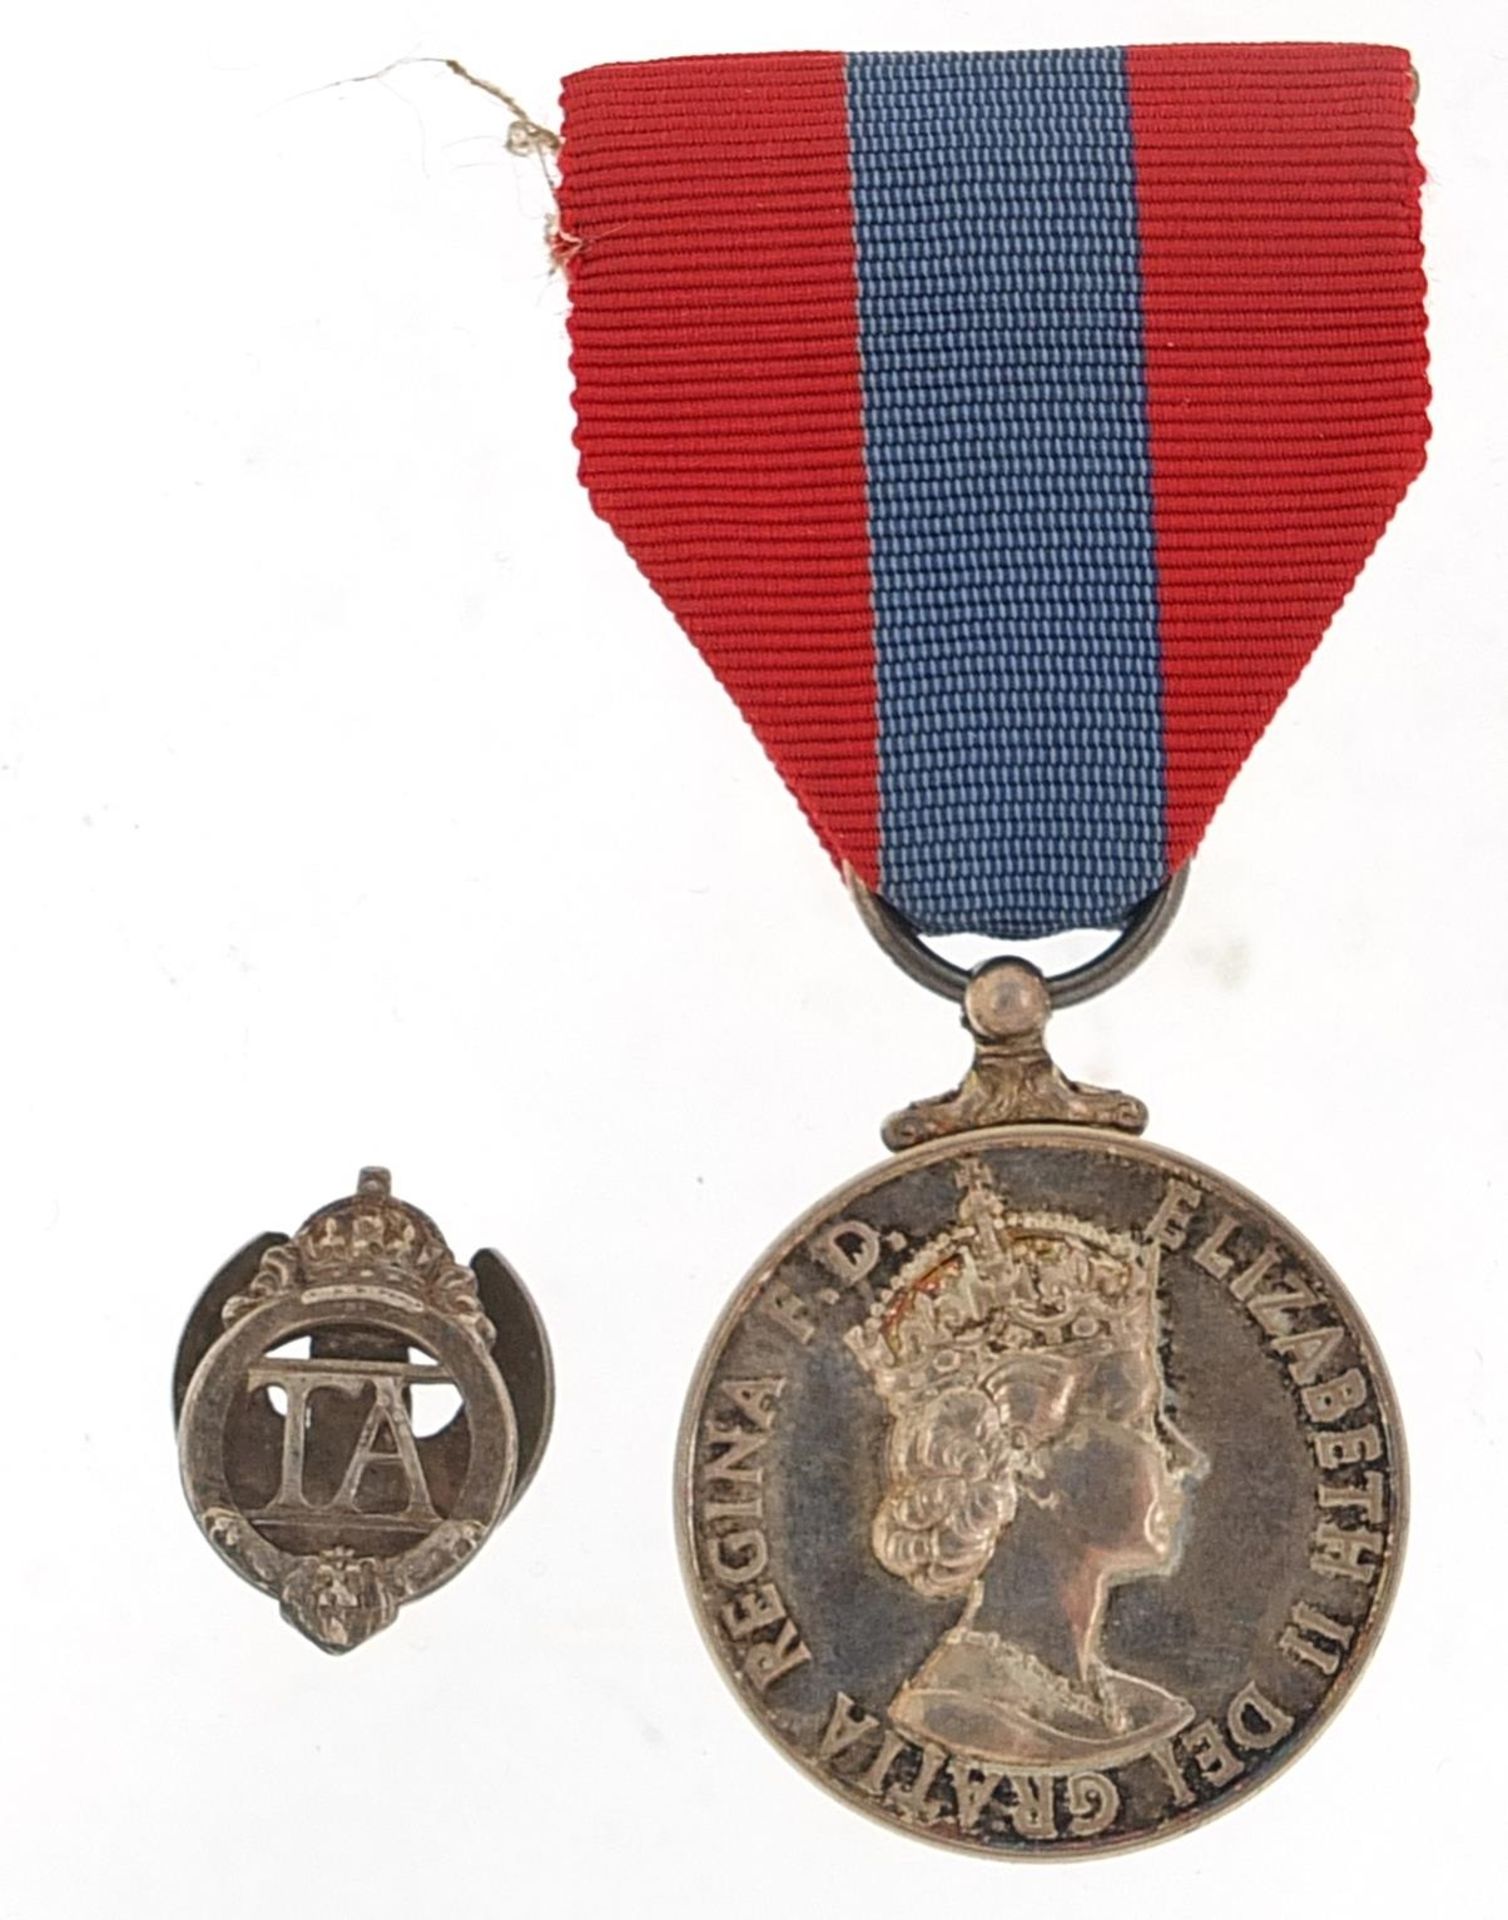 Military interest Elizabeth II Faithful Service medal and TA lapel, the Faithful Service medal - Image 2 of 6